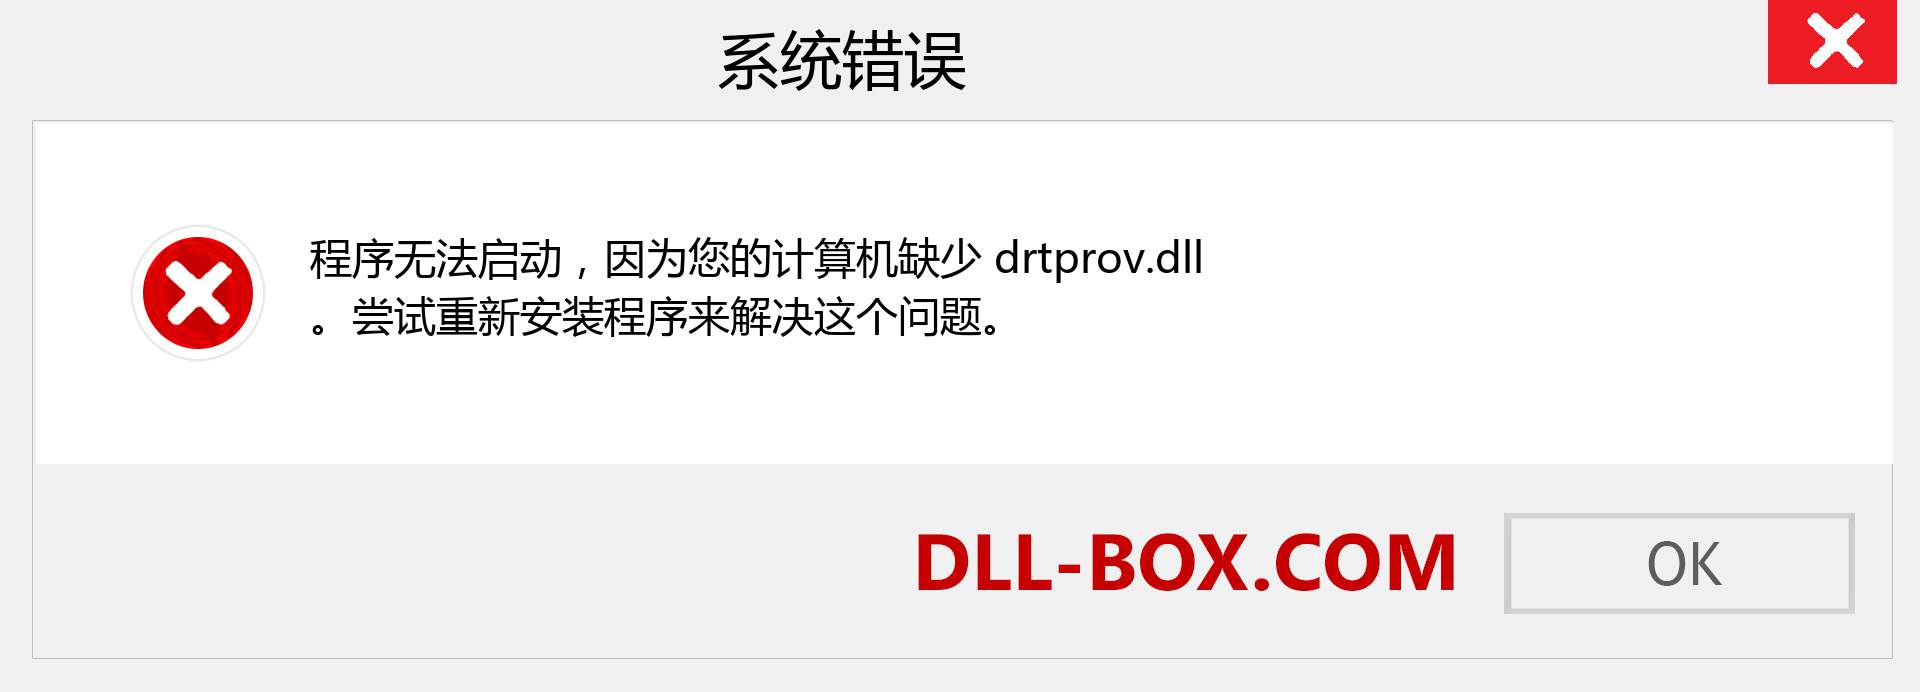 drtprov.dll 文件丢失？。 适用于 Windows 7、8、10 的下载 - 修复 Windows、照片、图像上的 drtprov dll 丢失错误